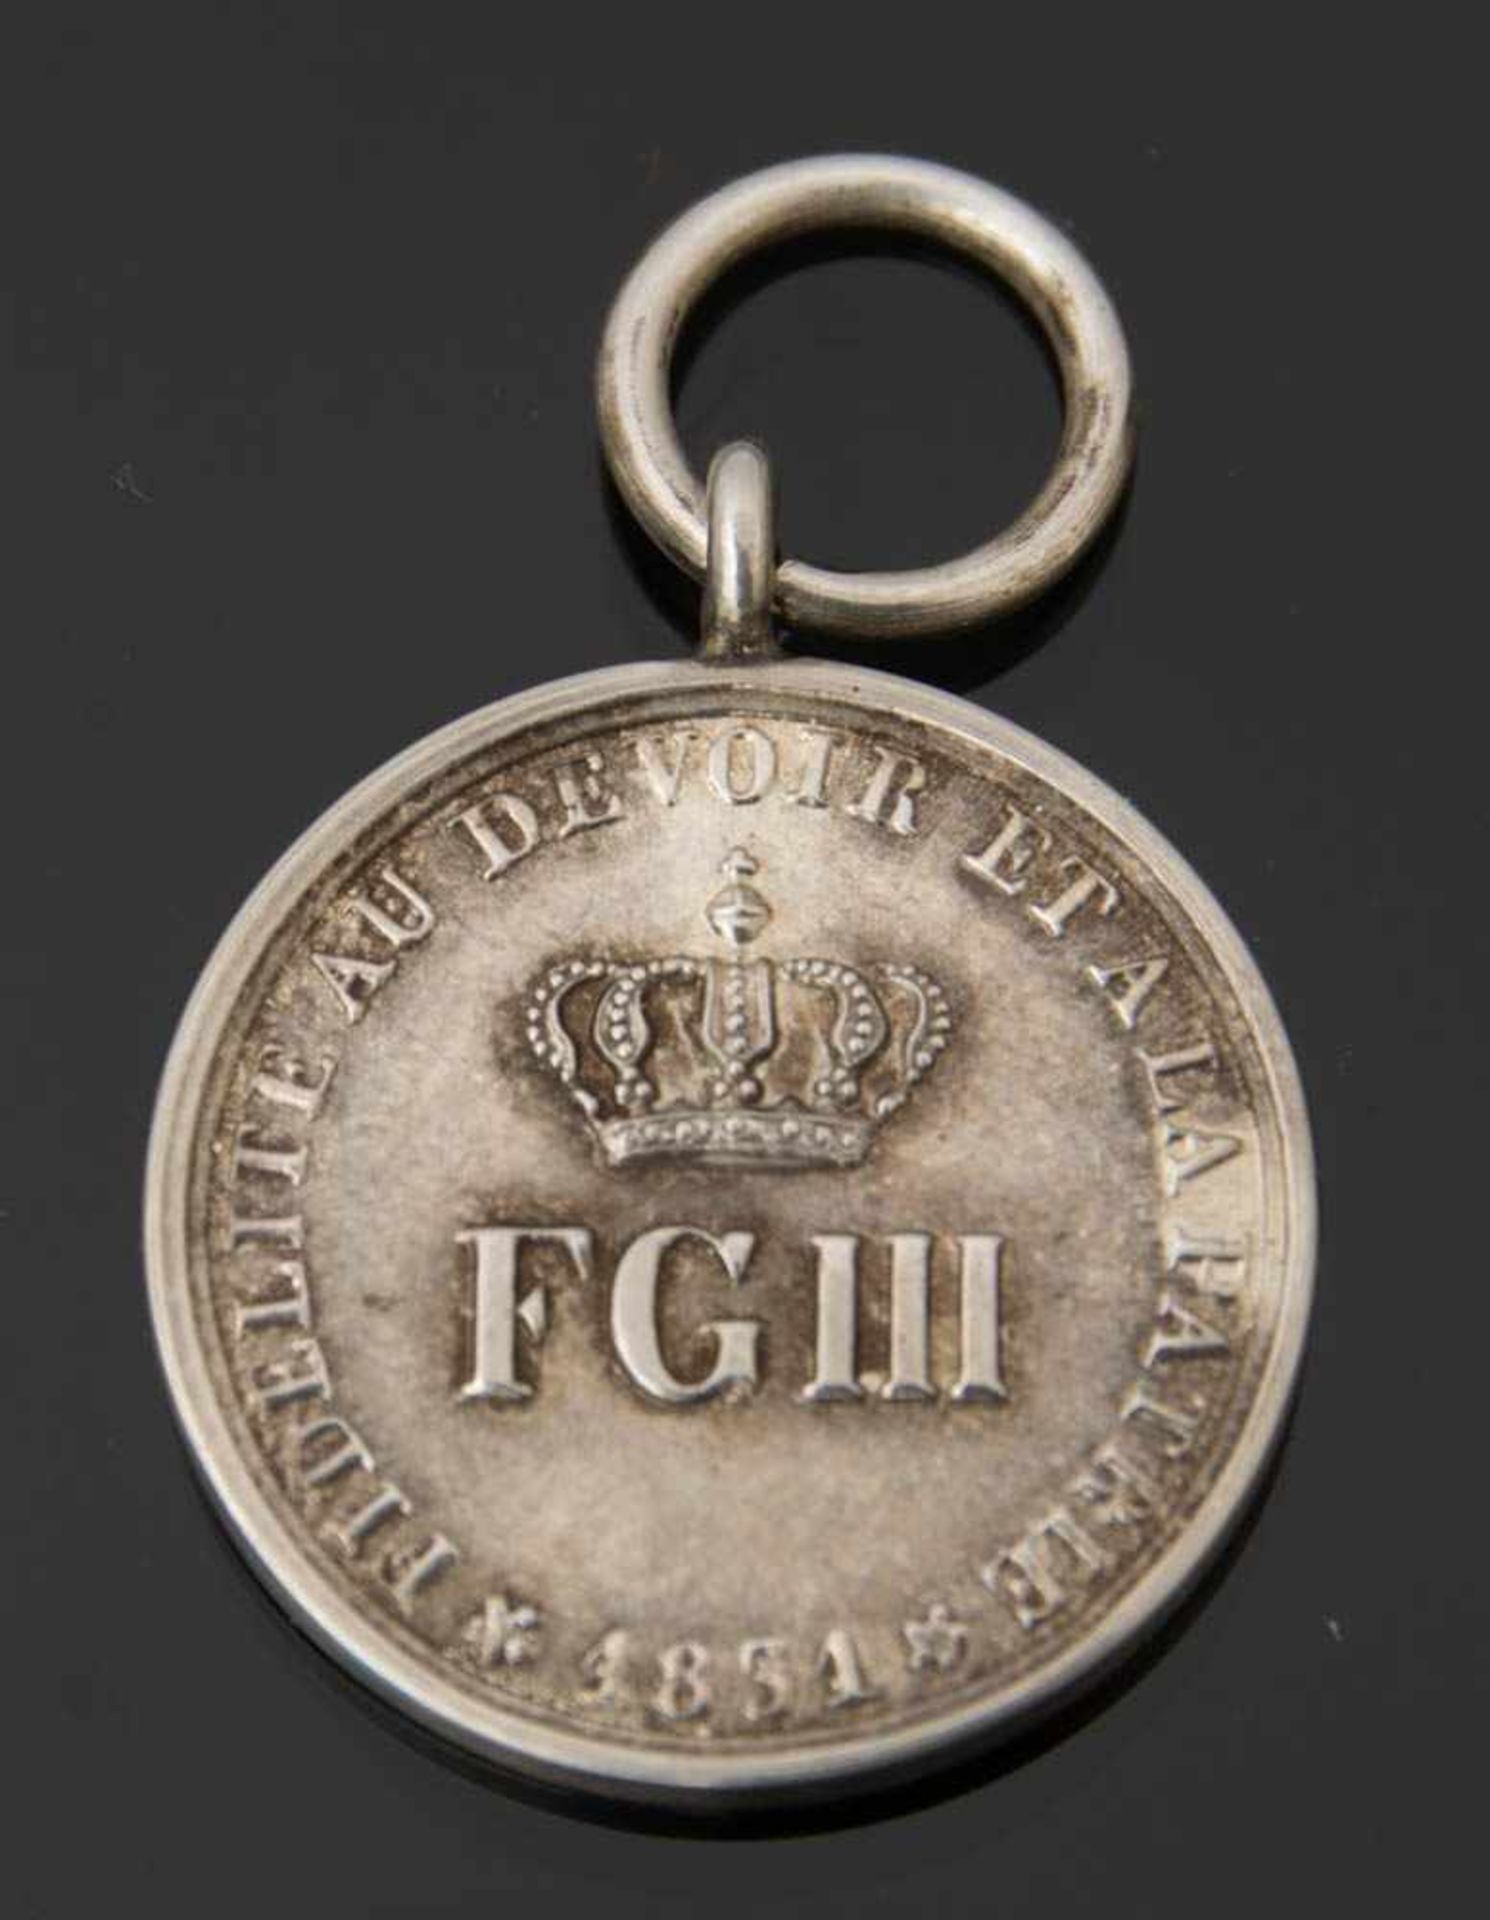 NEUFCHATELER MEDAILLE 1832, Silber.Diese Medaille wurde von König Friedrich Wilhelm III. zum